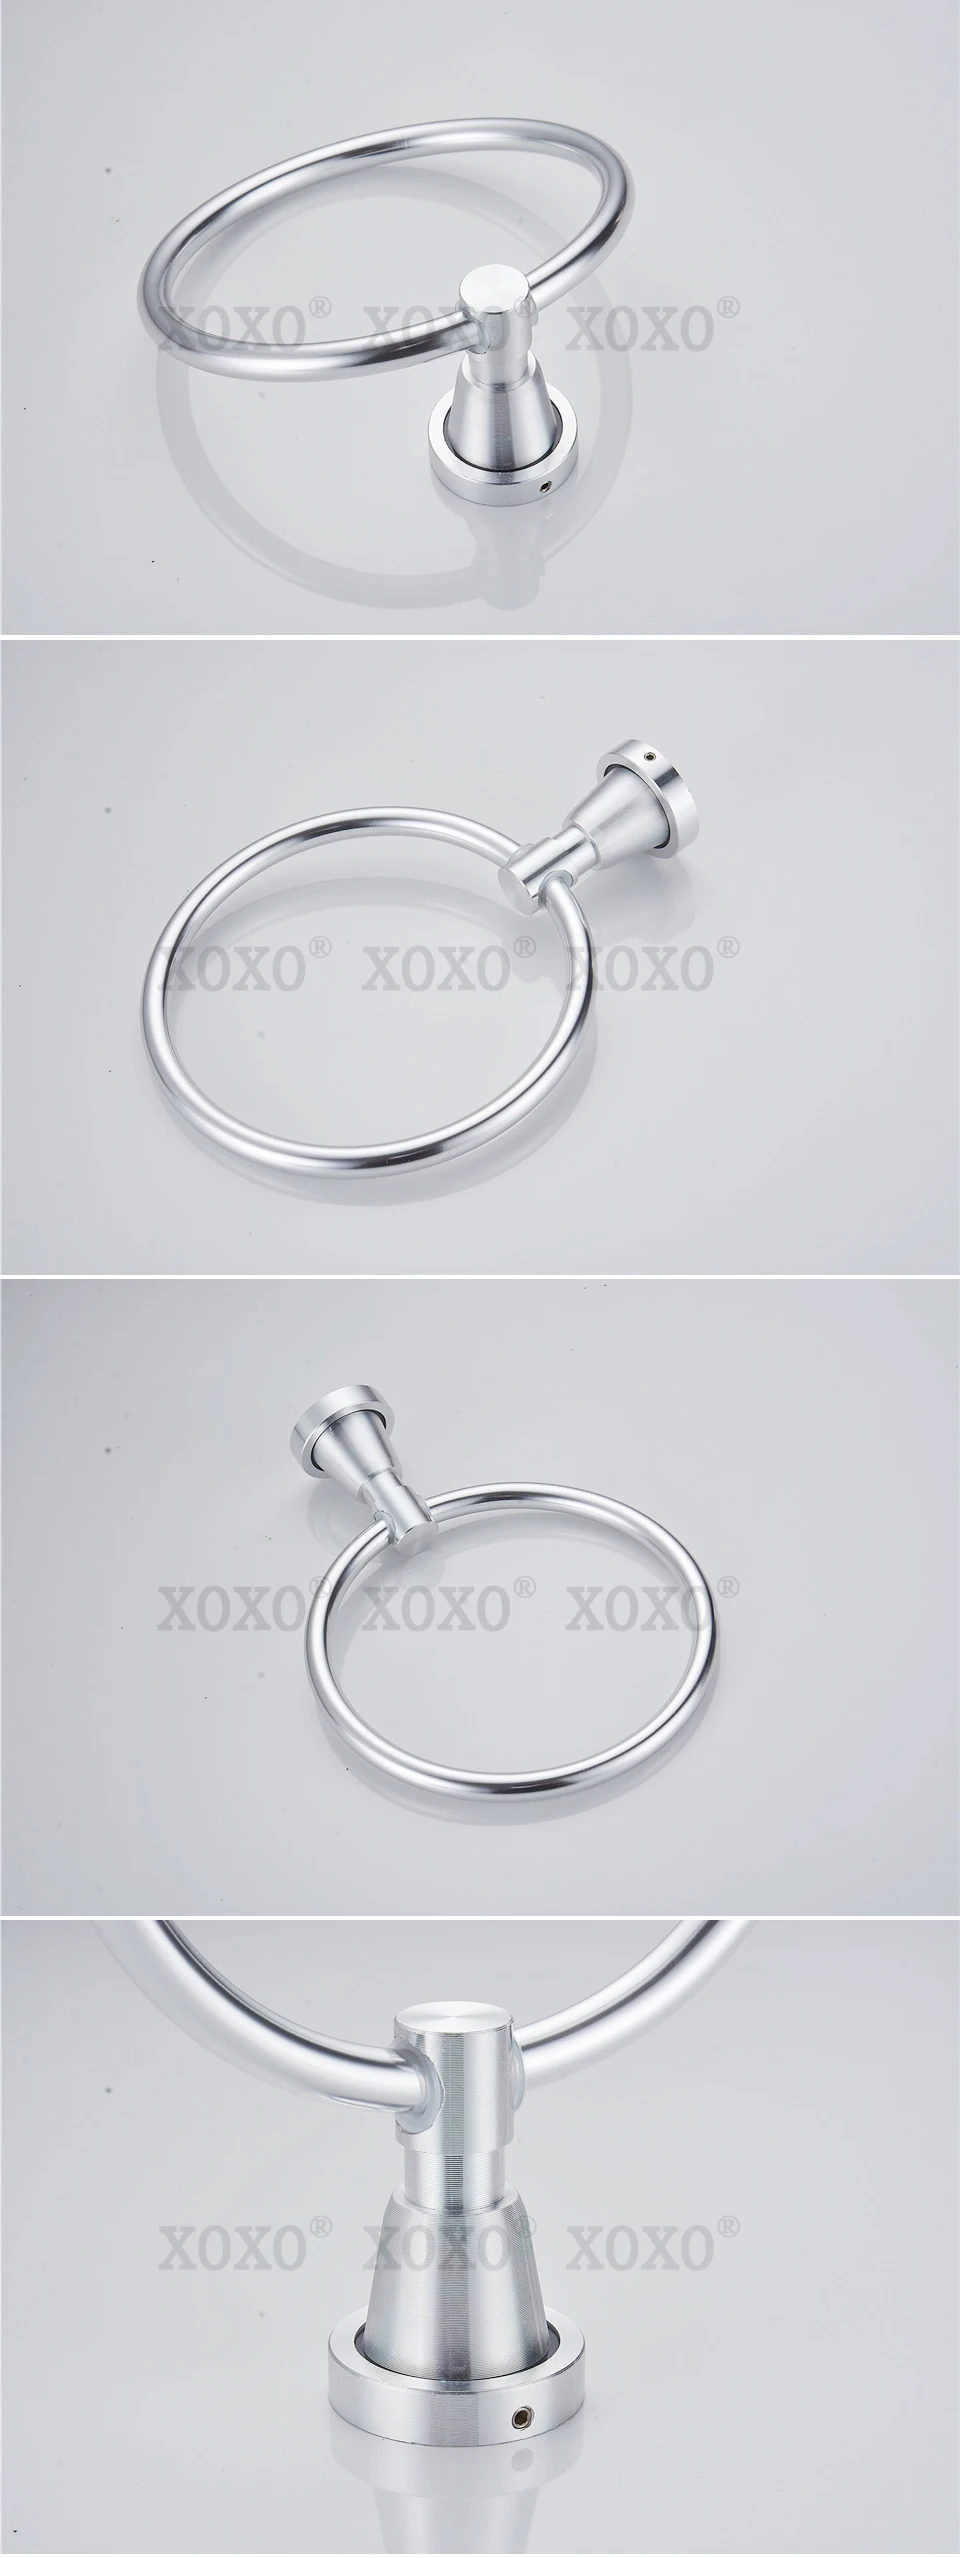 XOXO продукт soild практические настенный алюминиевое кольцо для полотенца/Держатель для полотенца 3080